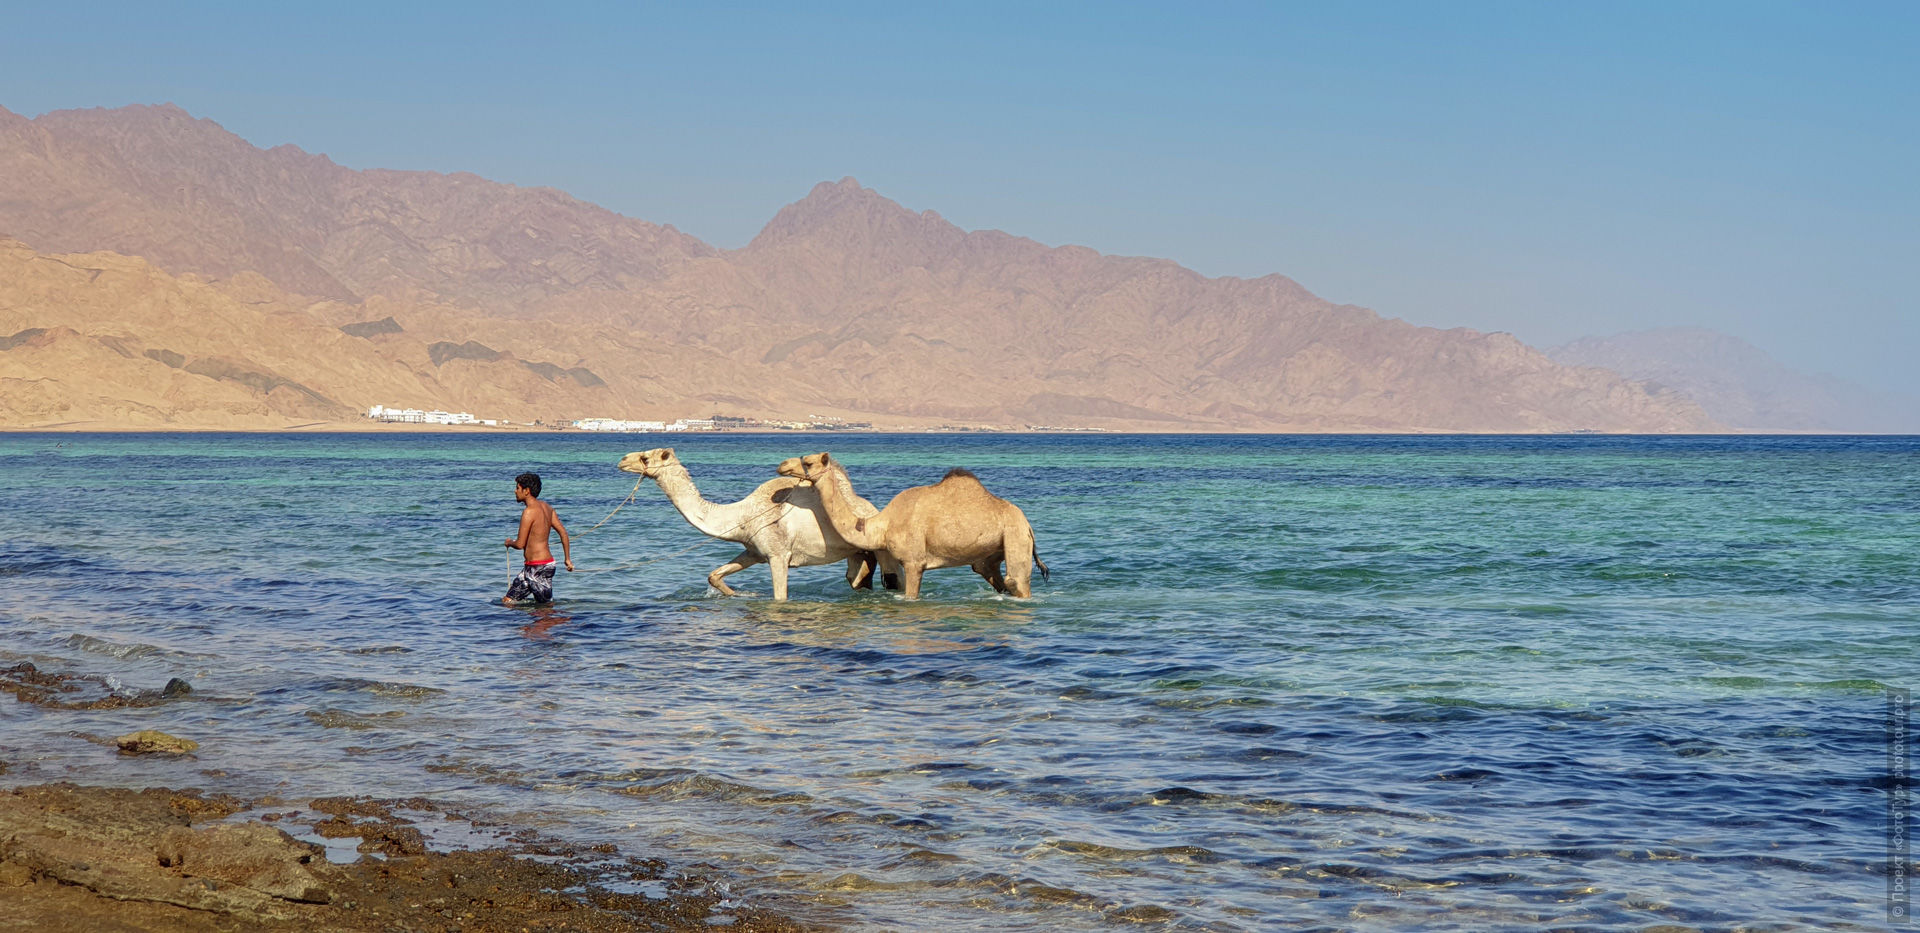 Купание верблюдов в море на Ассале, Дахаб, Синай.